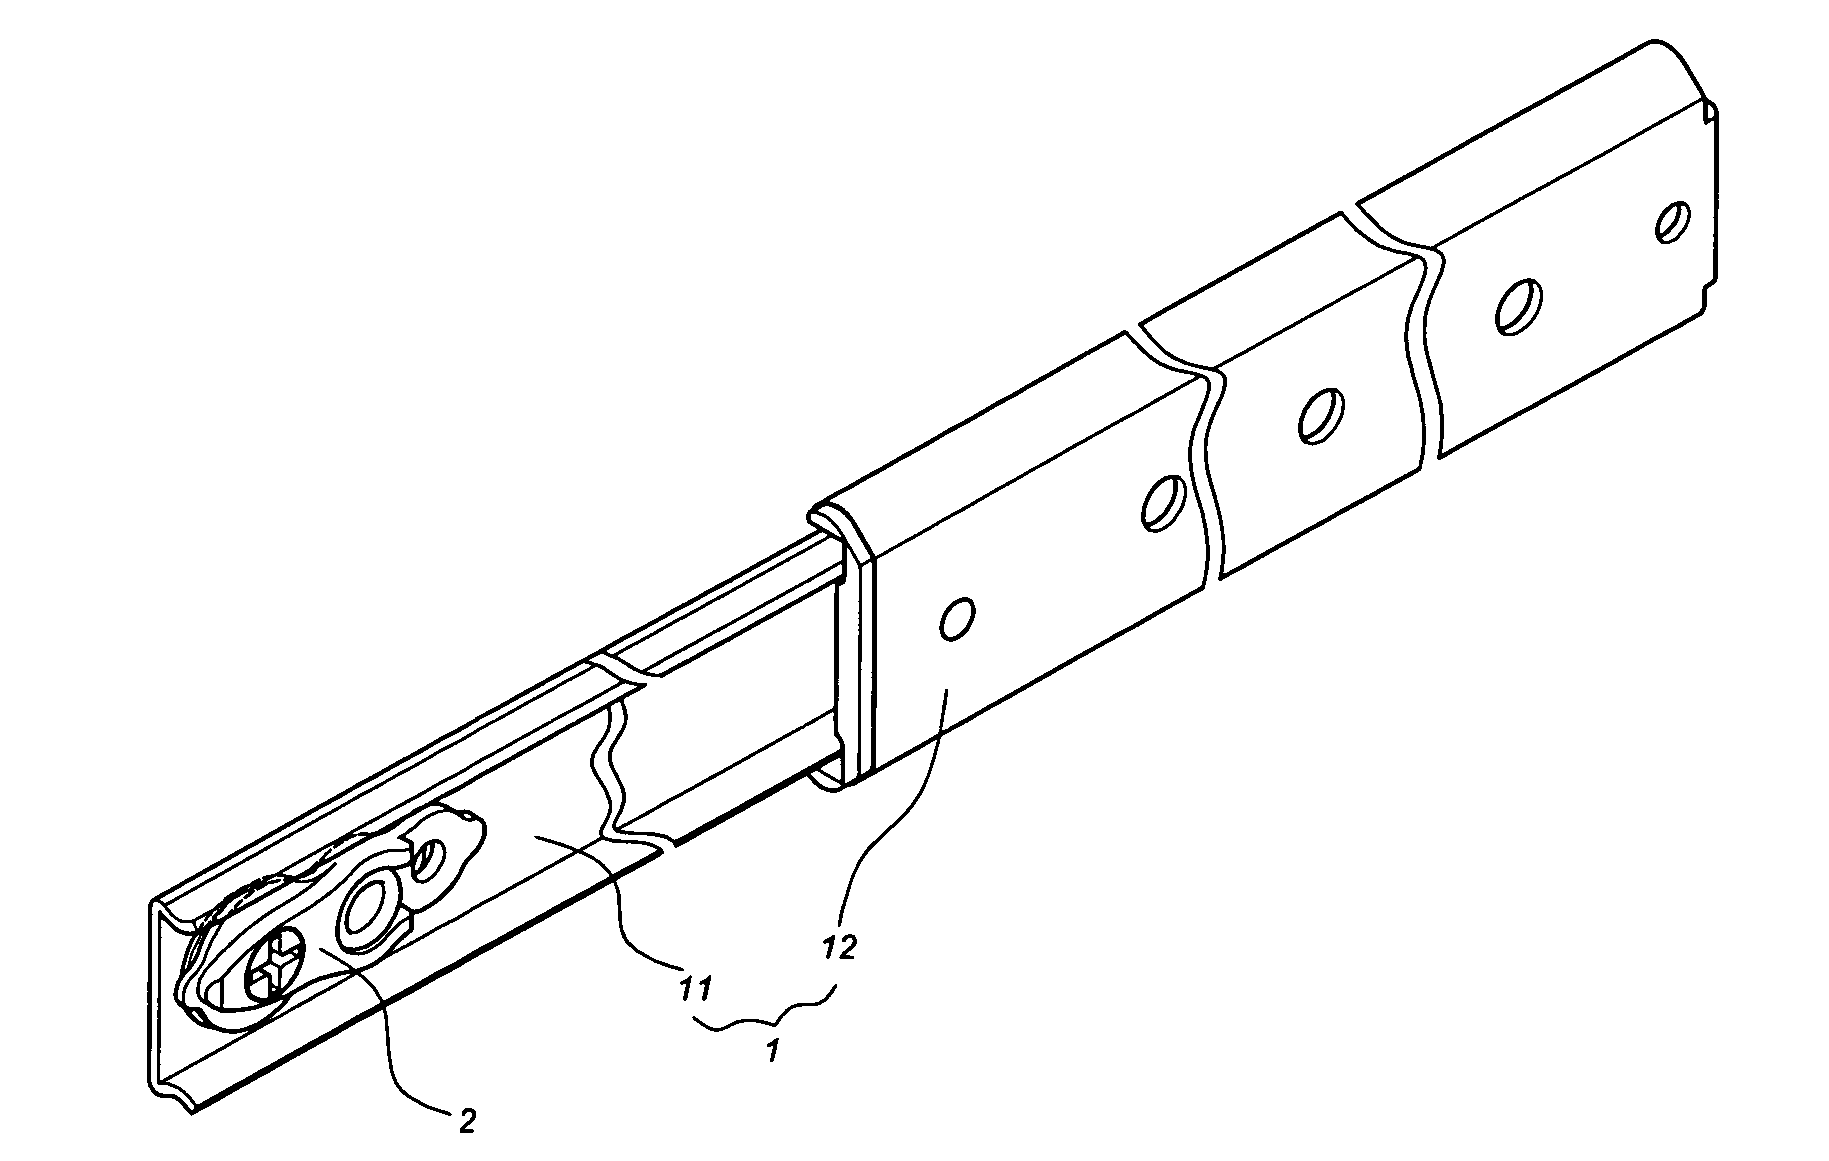 Drawer slide assembly having an adjustment mechanism